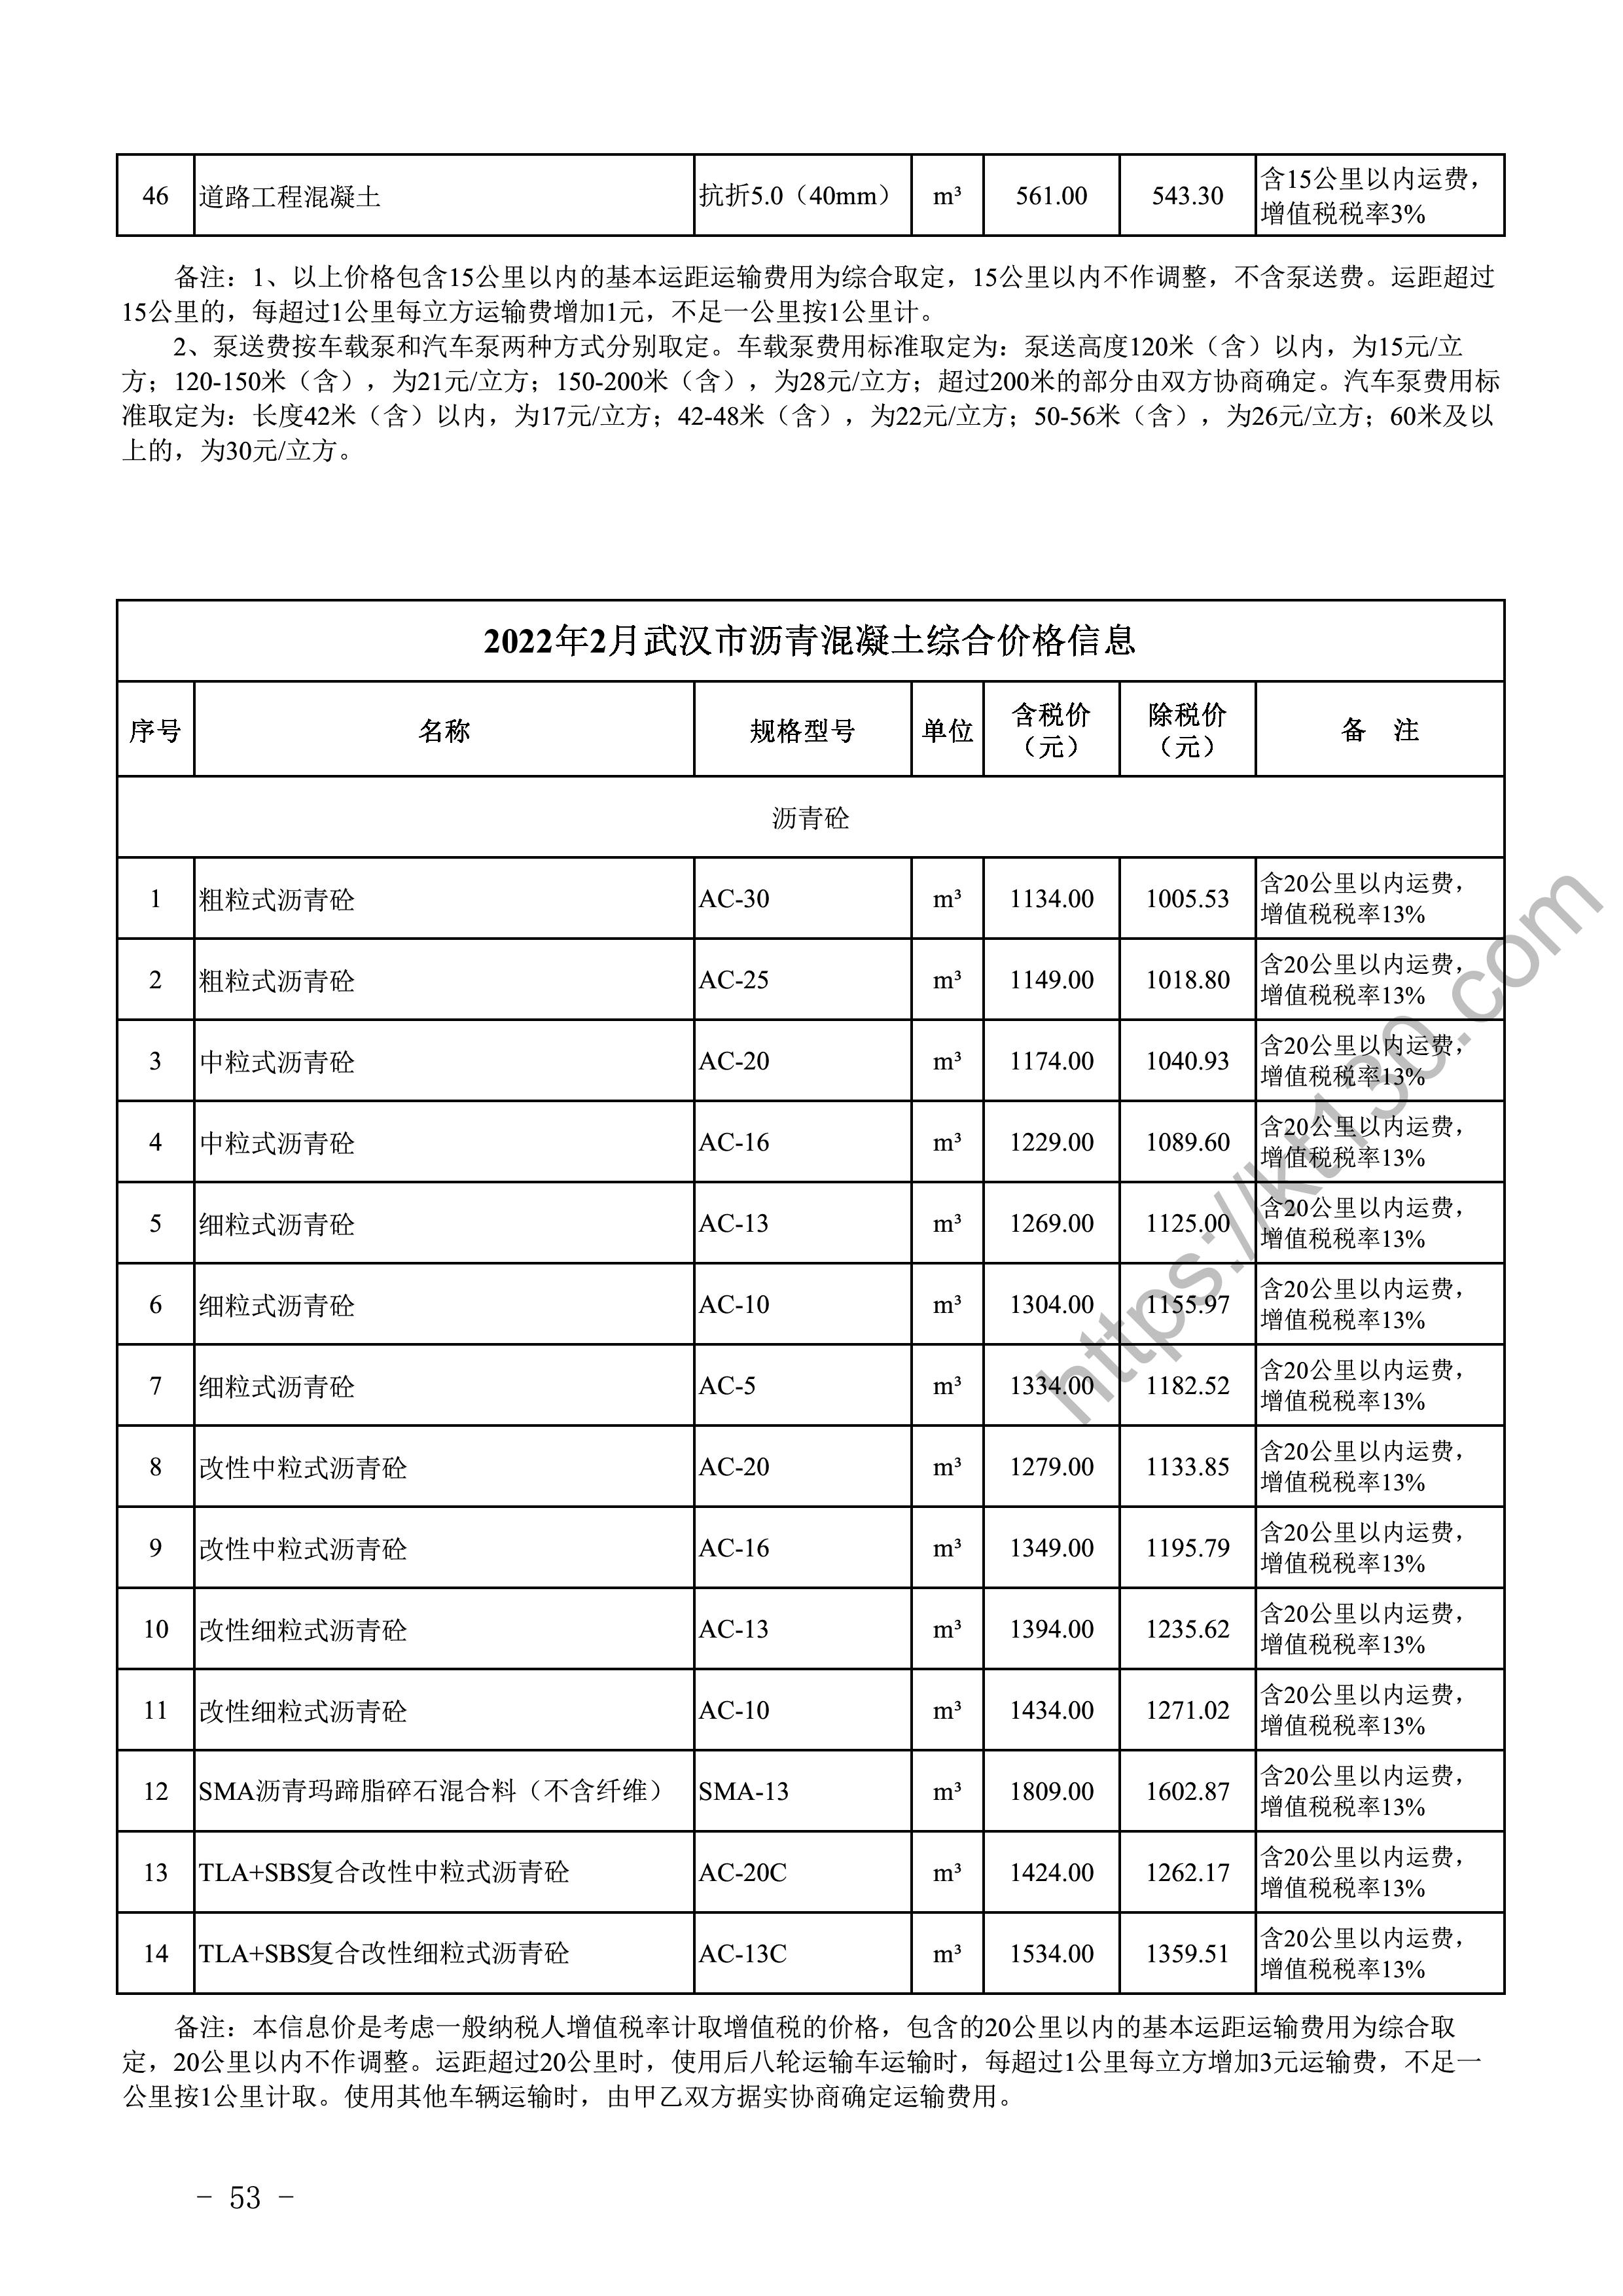 武汉市2022年2月建筑材料价_沥青砼_45389